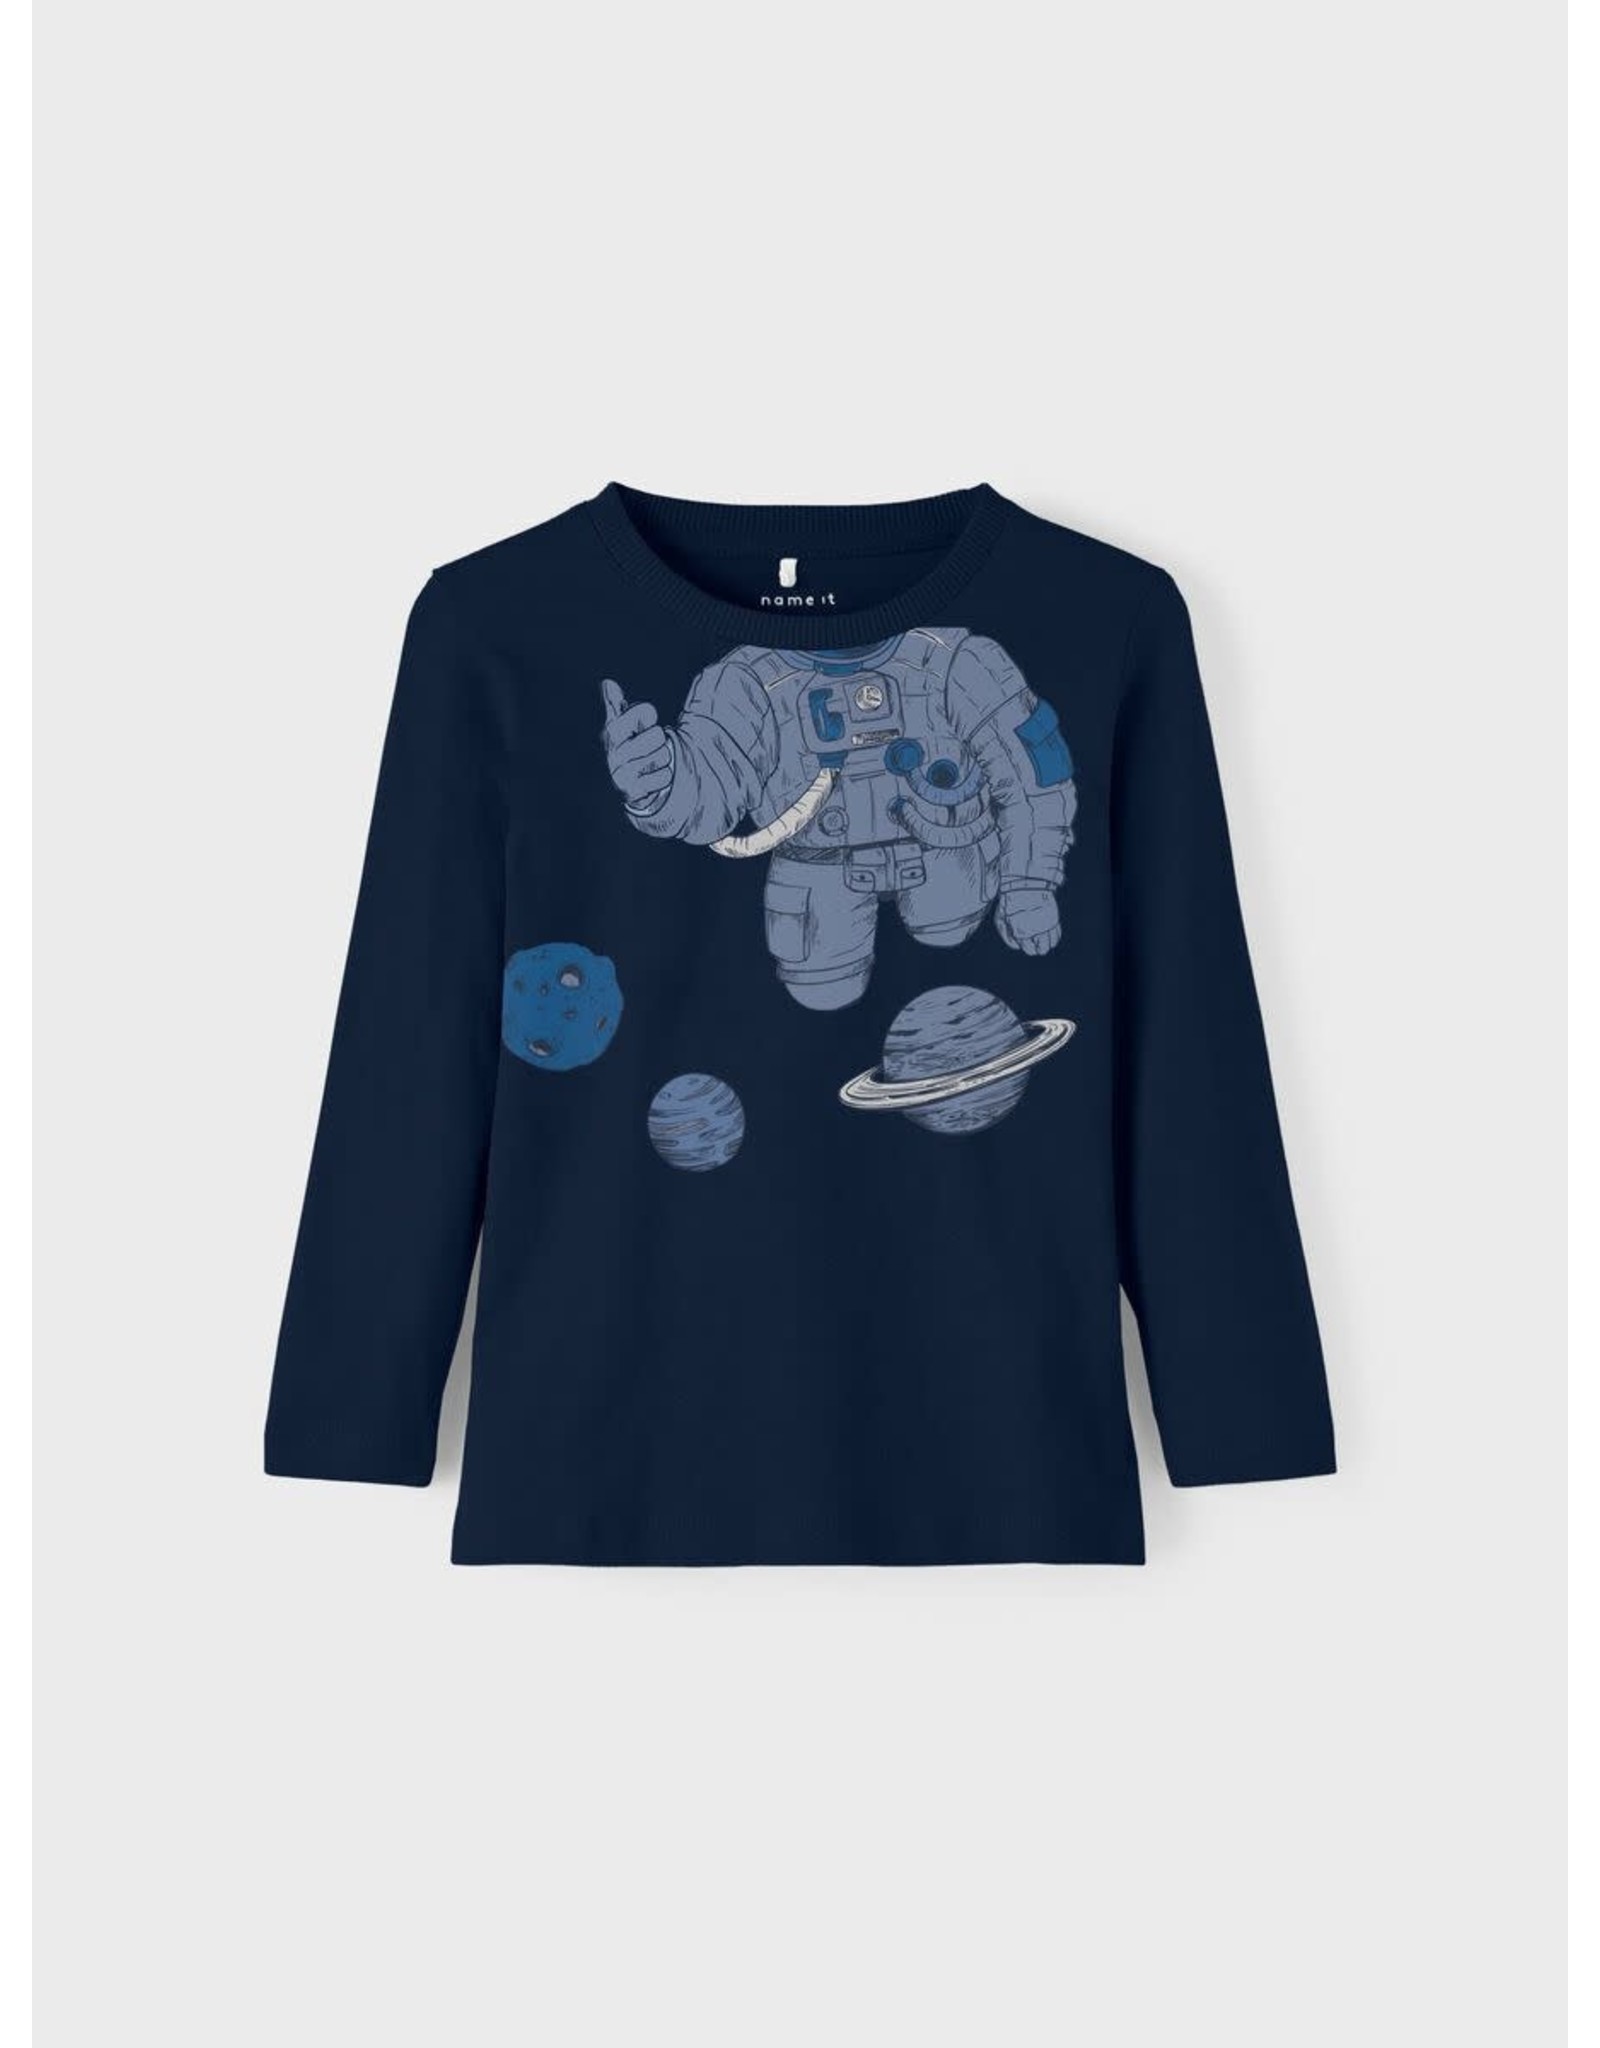 Name It Donkerblauwe t-shirt waar jij de astronaut bent